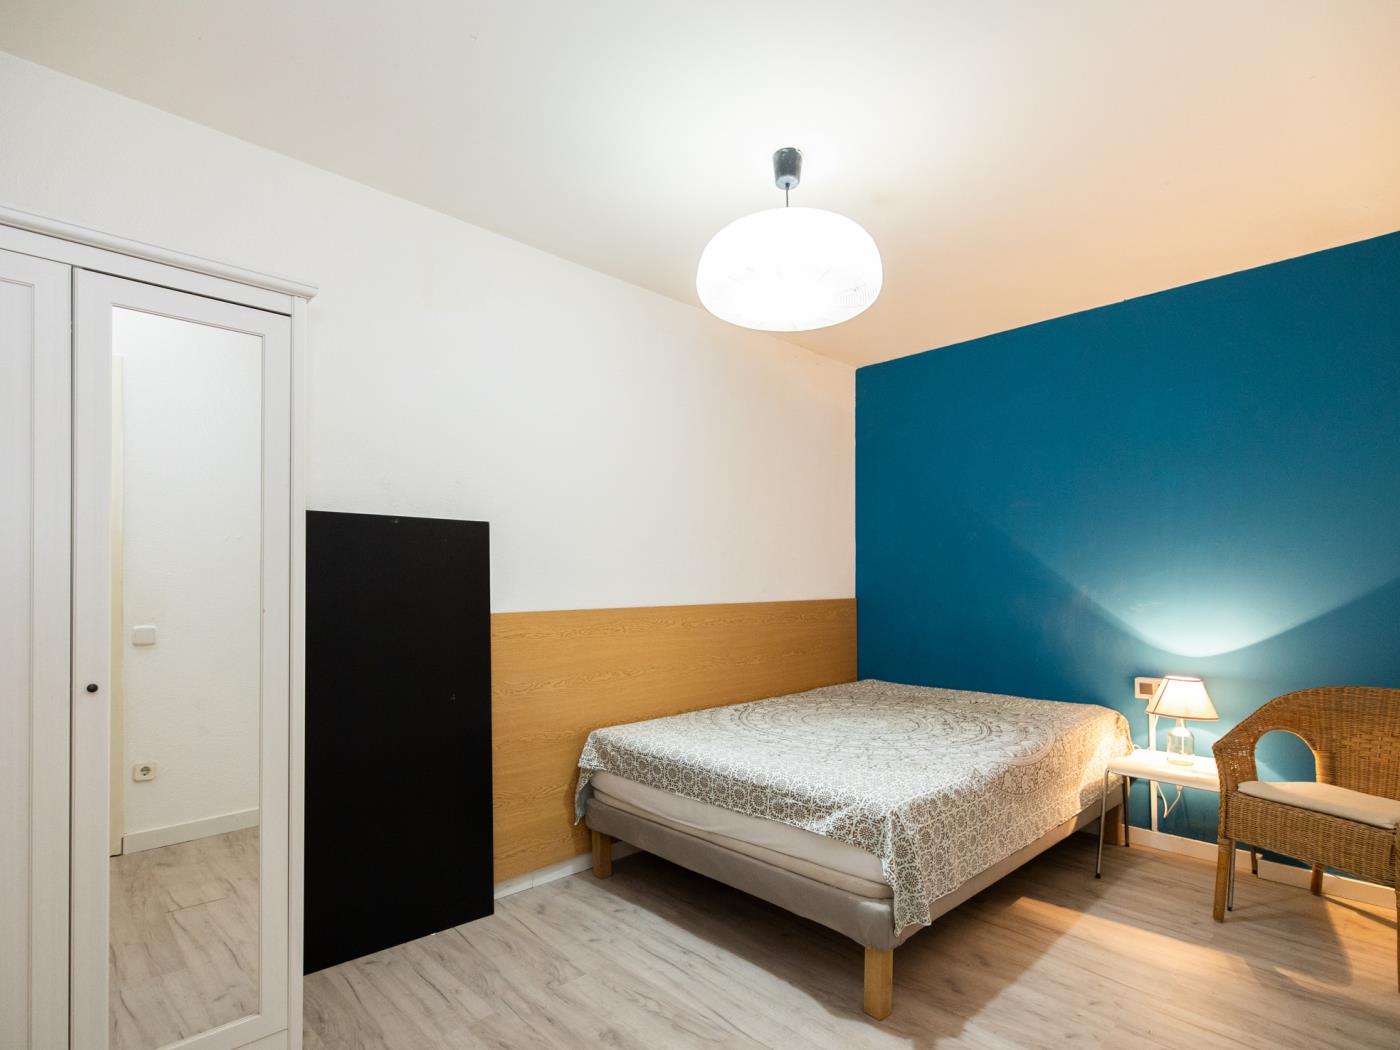 Apartamento de habitaciones dobles para estudiantes cerca de la Pompeu Fabra - My Space Barcelona Apartamentos